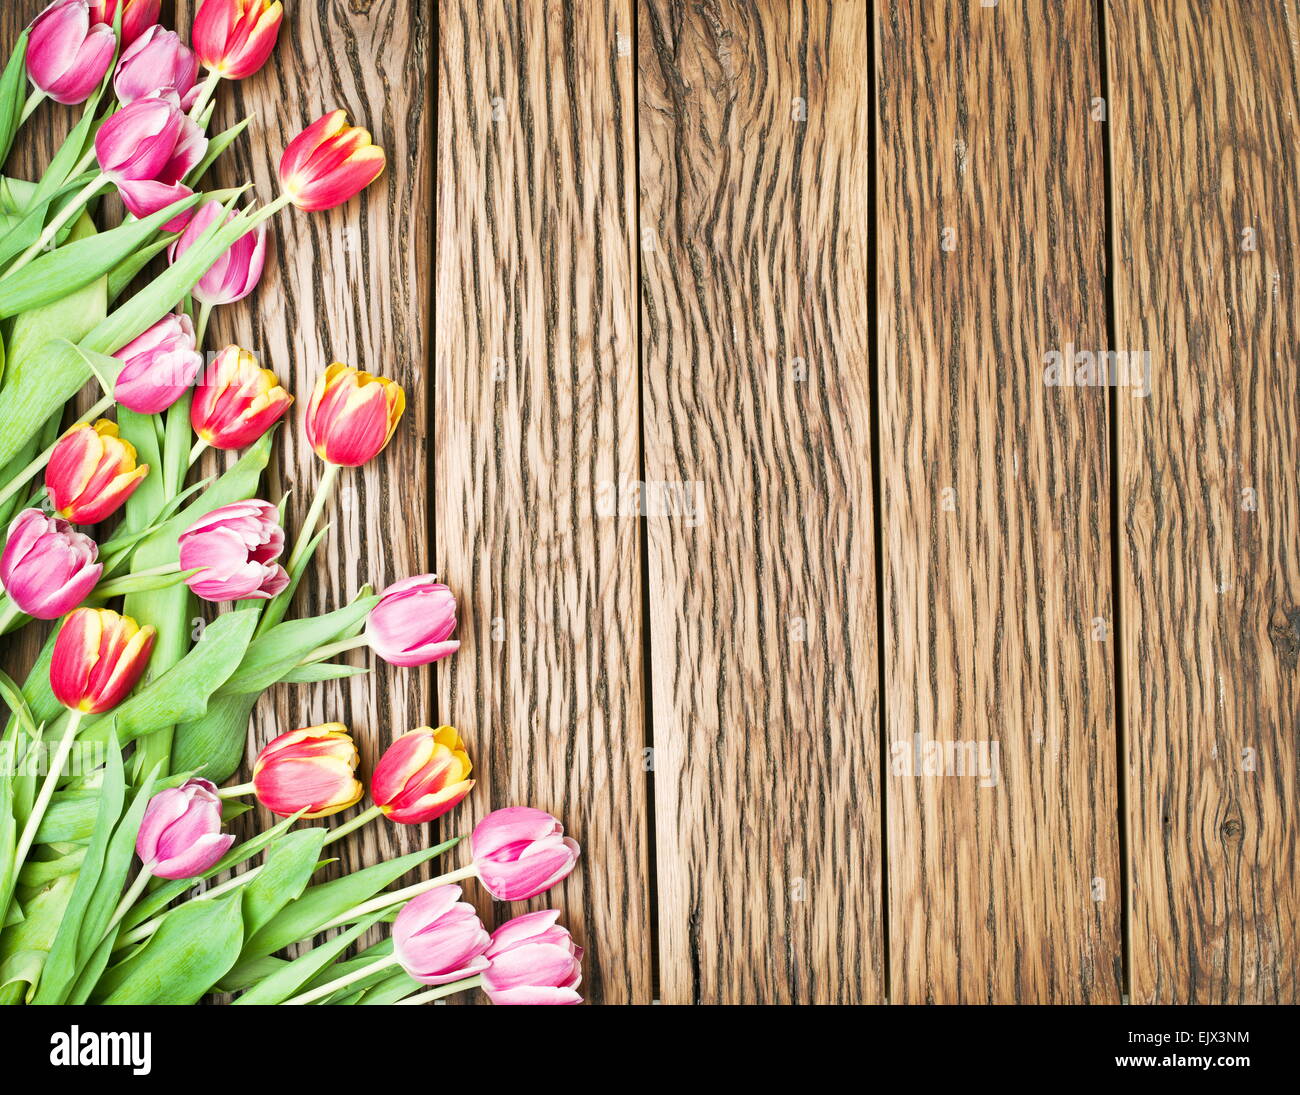 Rosa y tulipanes rojos sobre un fondo de madera vieja. Espacio para el texto. Foto de stock